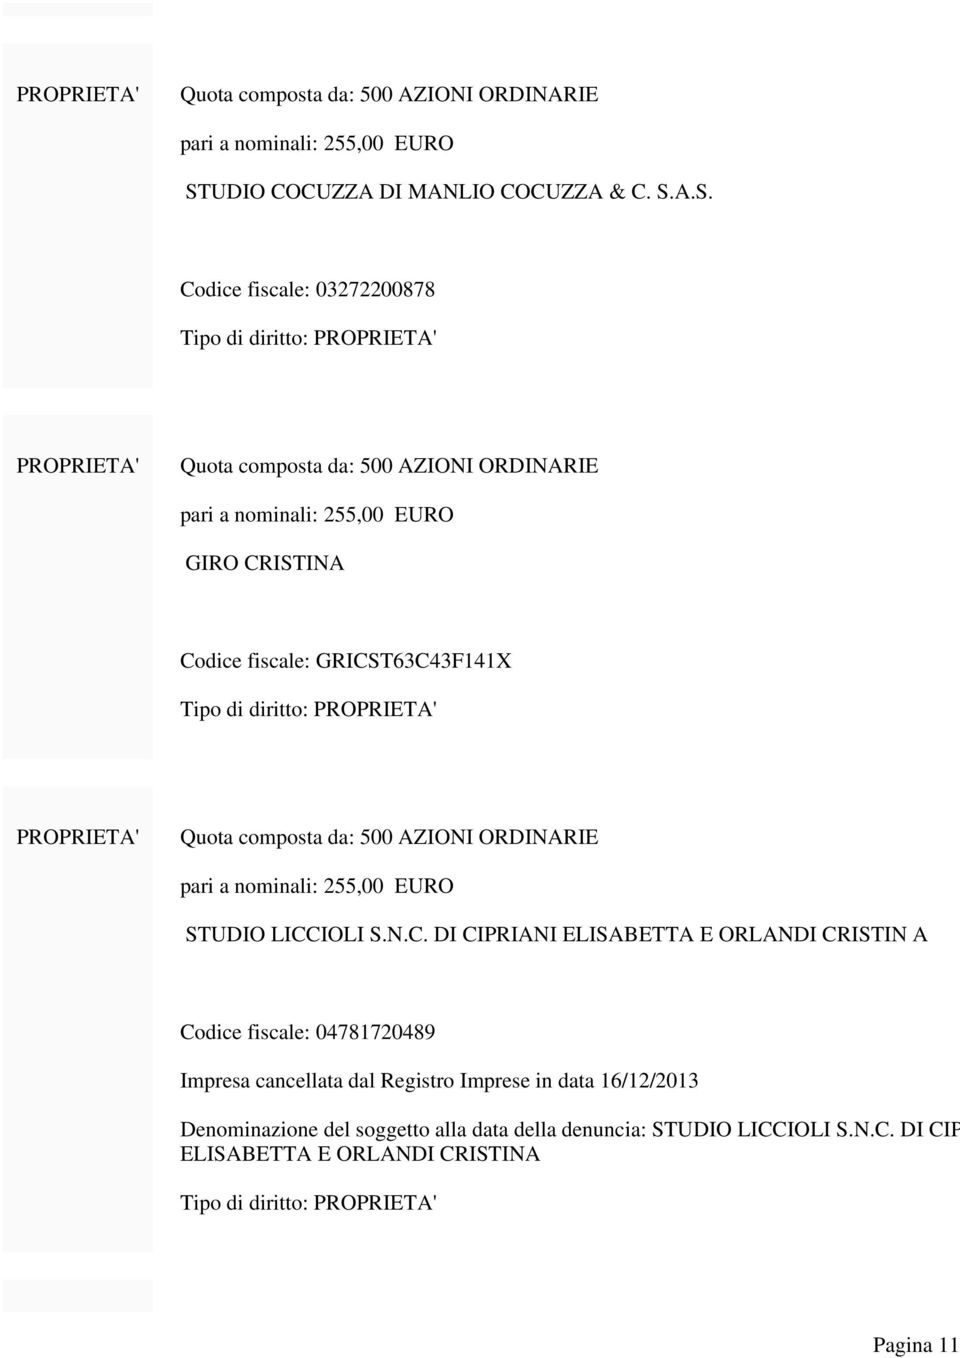 Registro Imprese in data 16/12/2013 Denominazione del soggetto alla data della denuncia: STUDIO